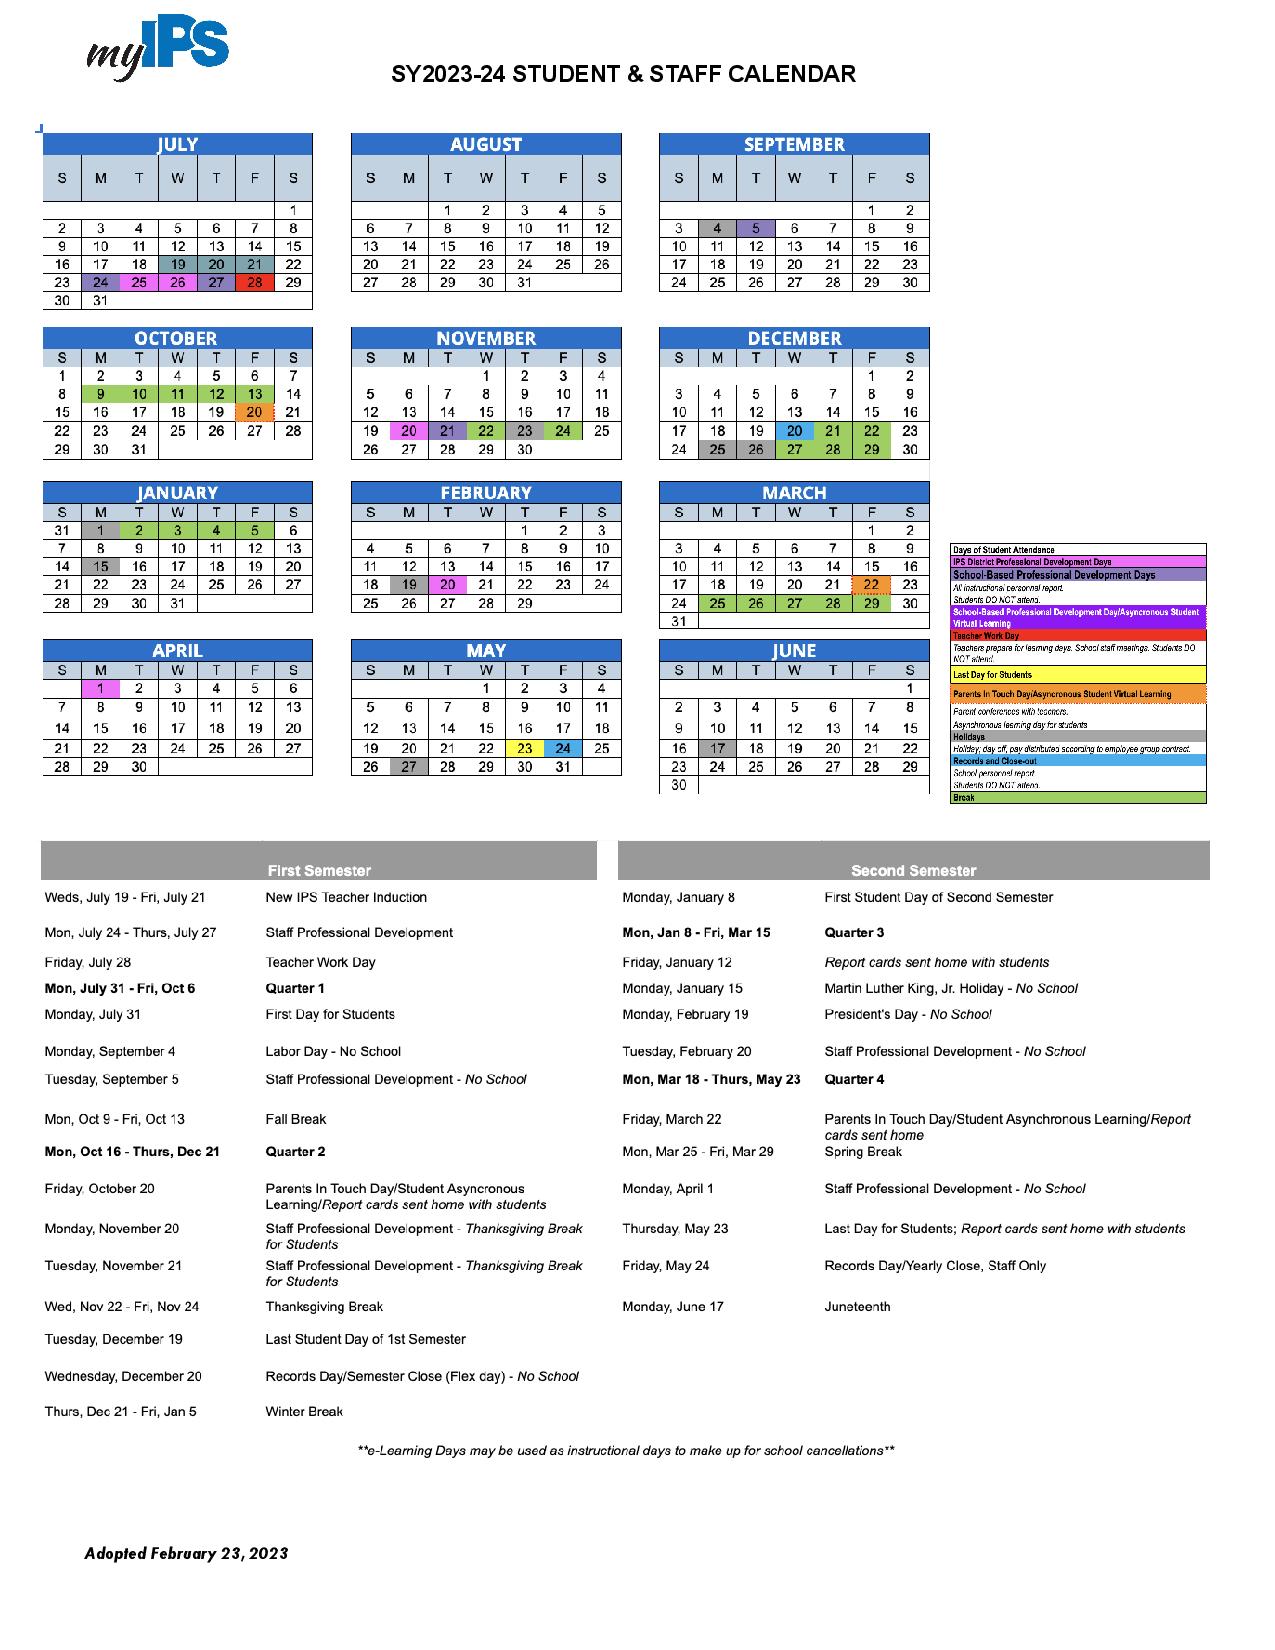 Indianapolis Public Schools Calendar Holidays 2023-2024 PDF